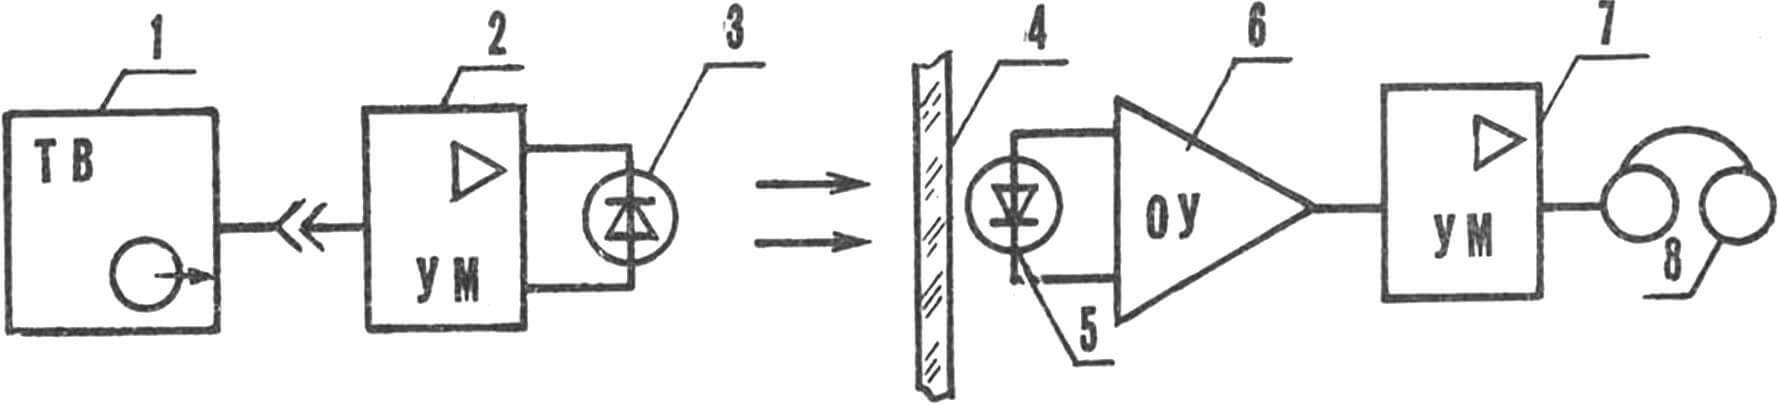 Рис. 1. Структурная схема ИК-светотелефона